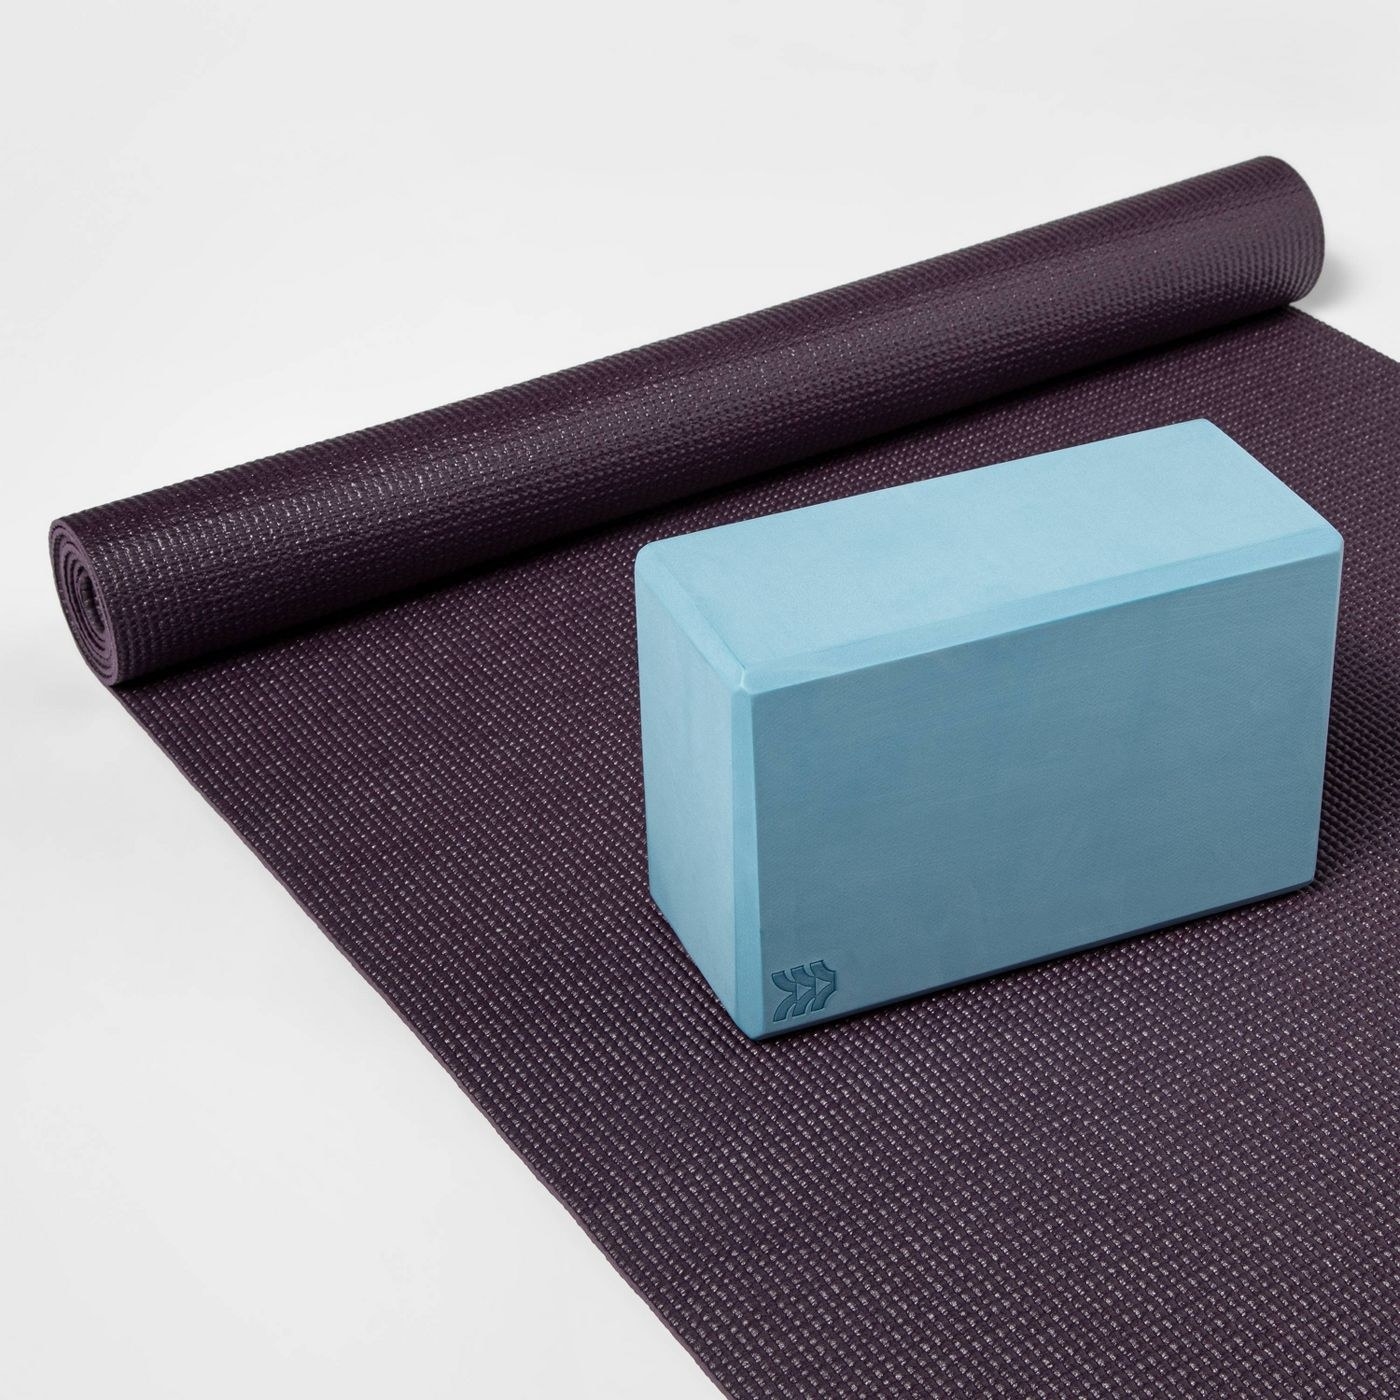 A blue block on a yoga mat